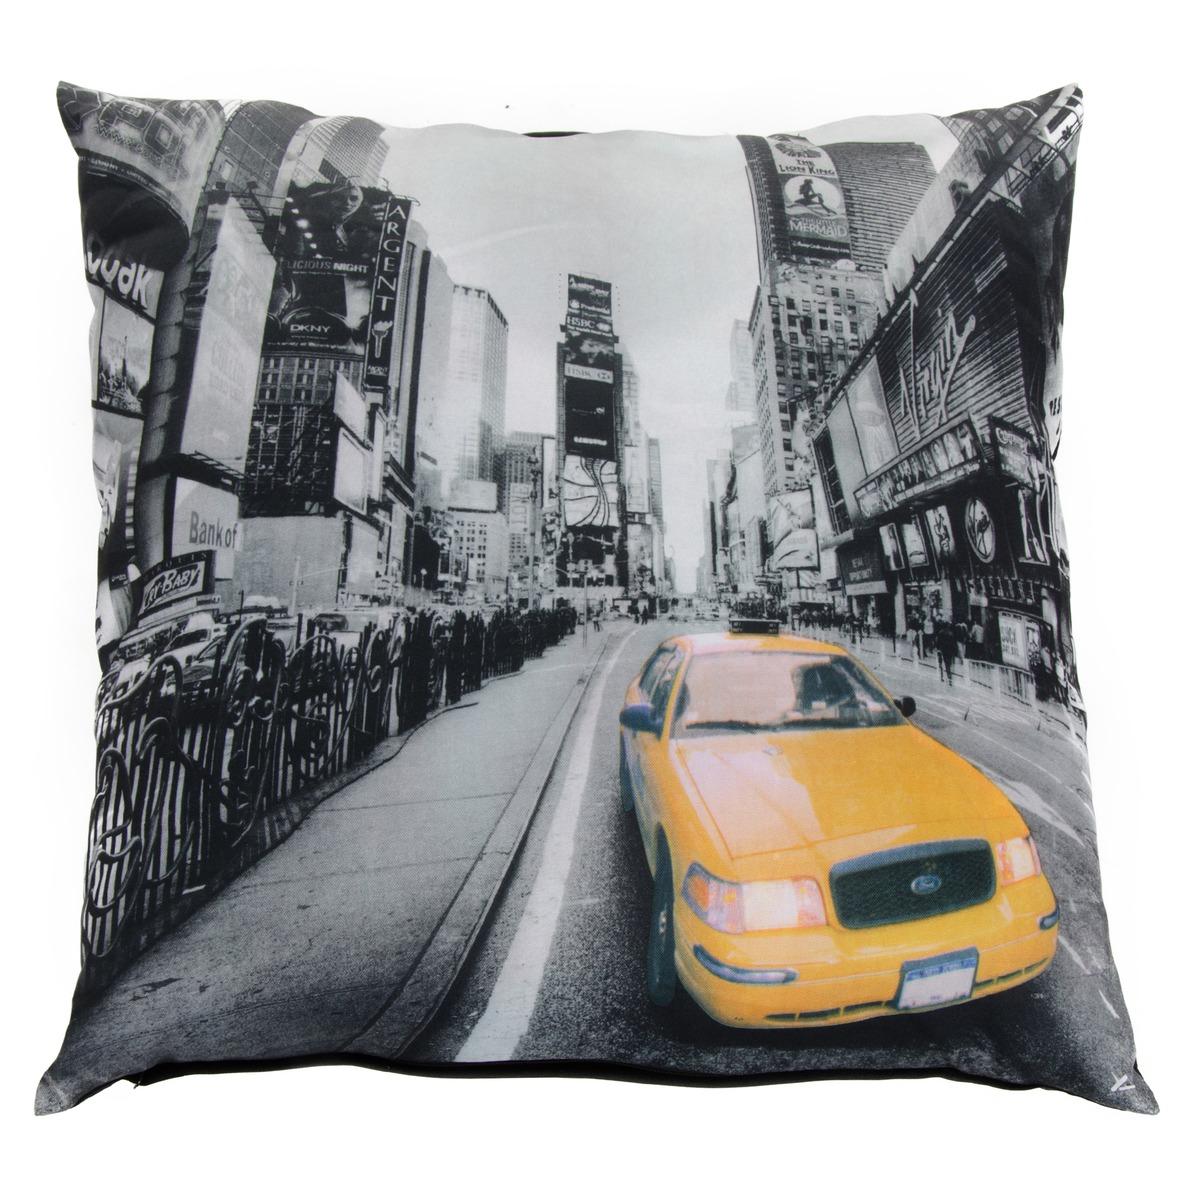 Coussin imprimé décor taxi newyorkais - 45 x 45 cm - Gris, jaune